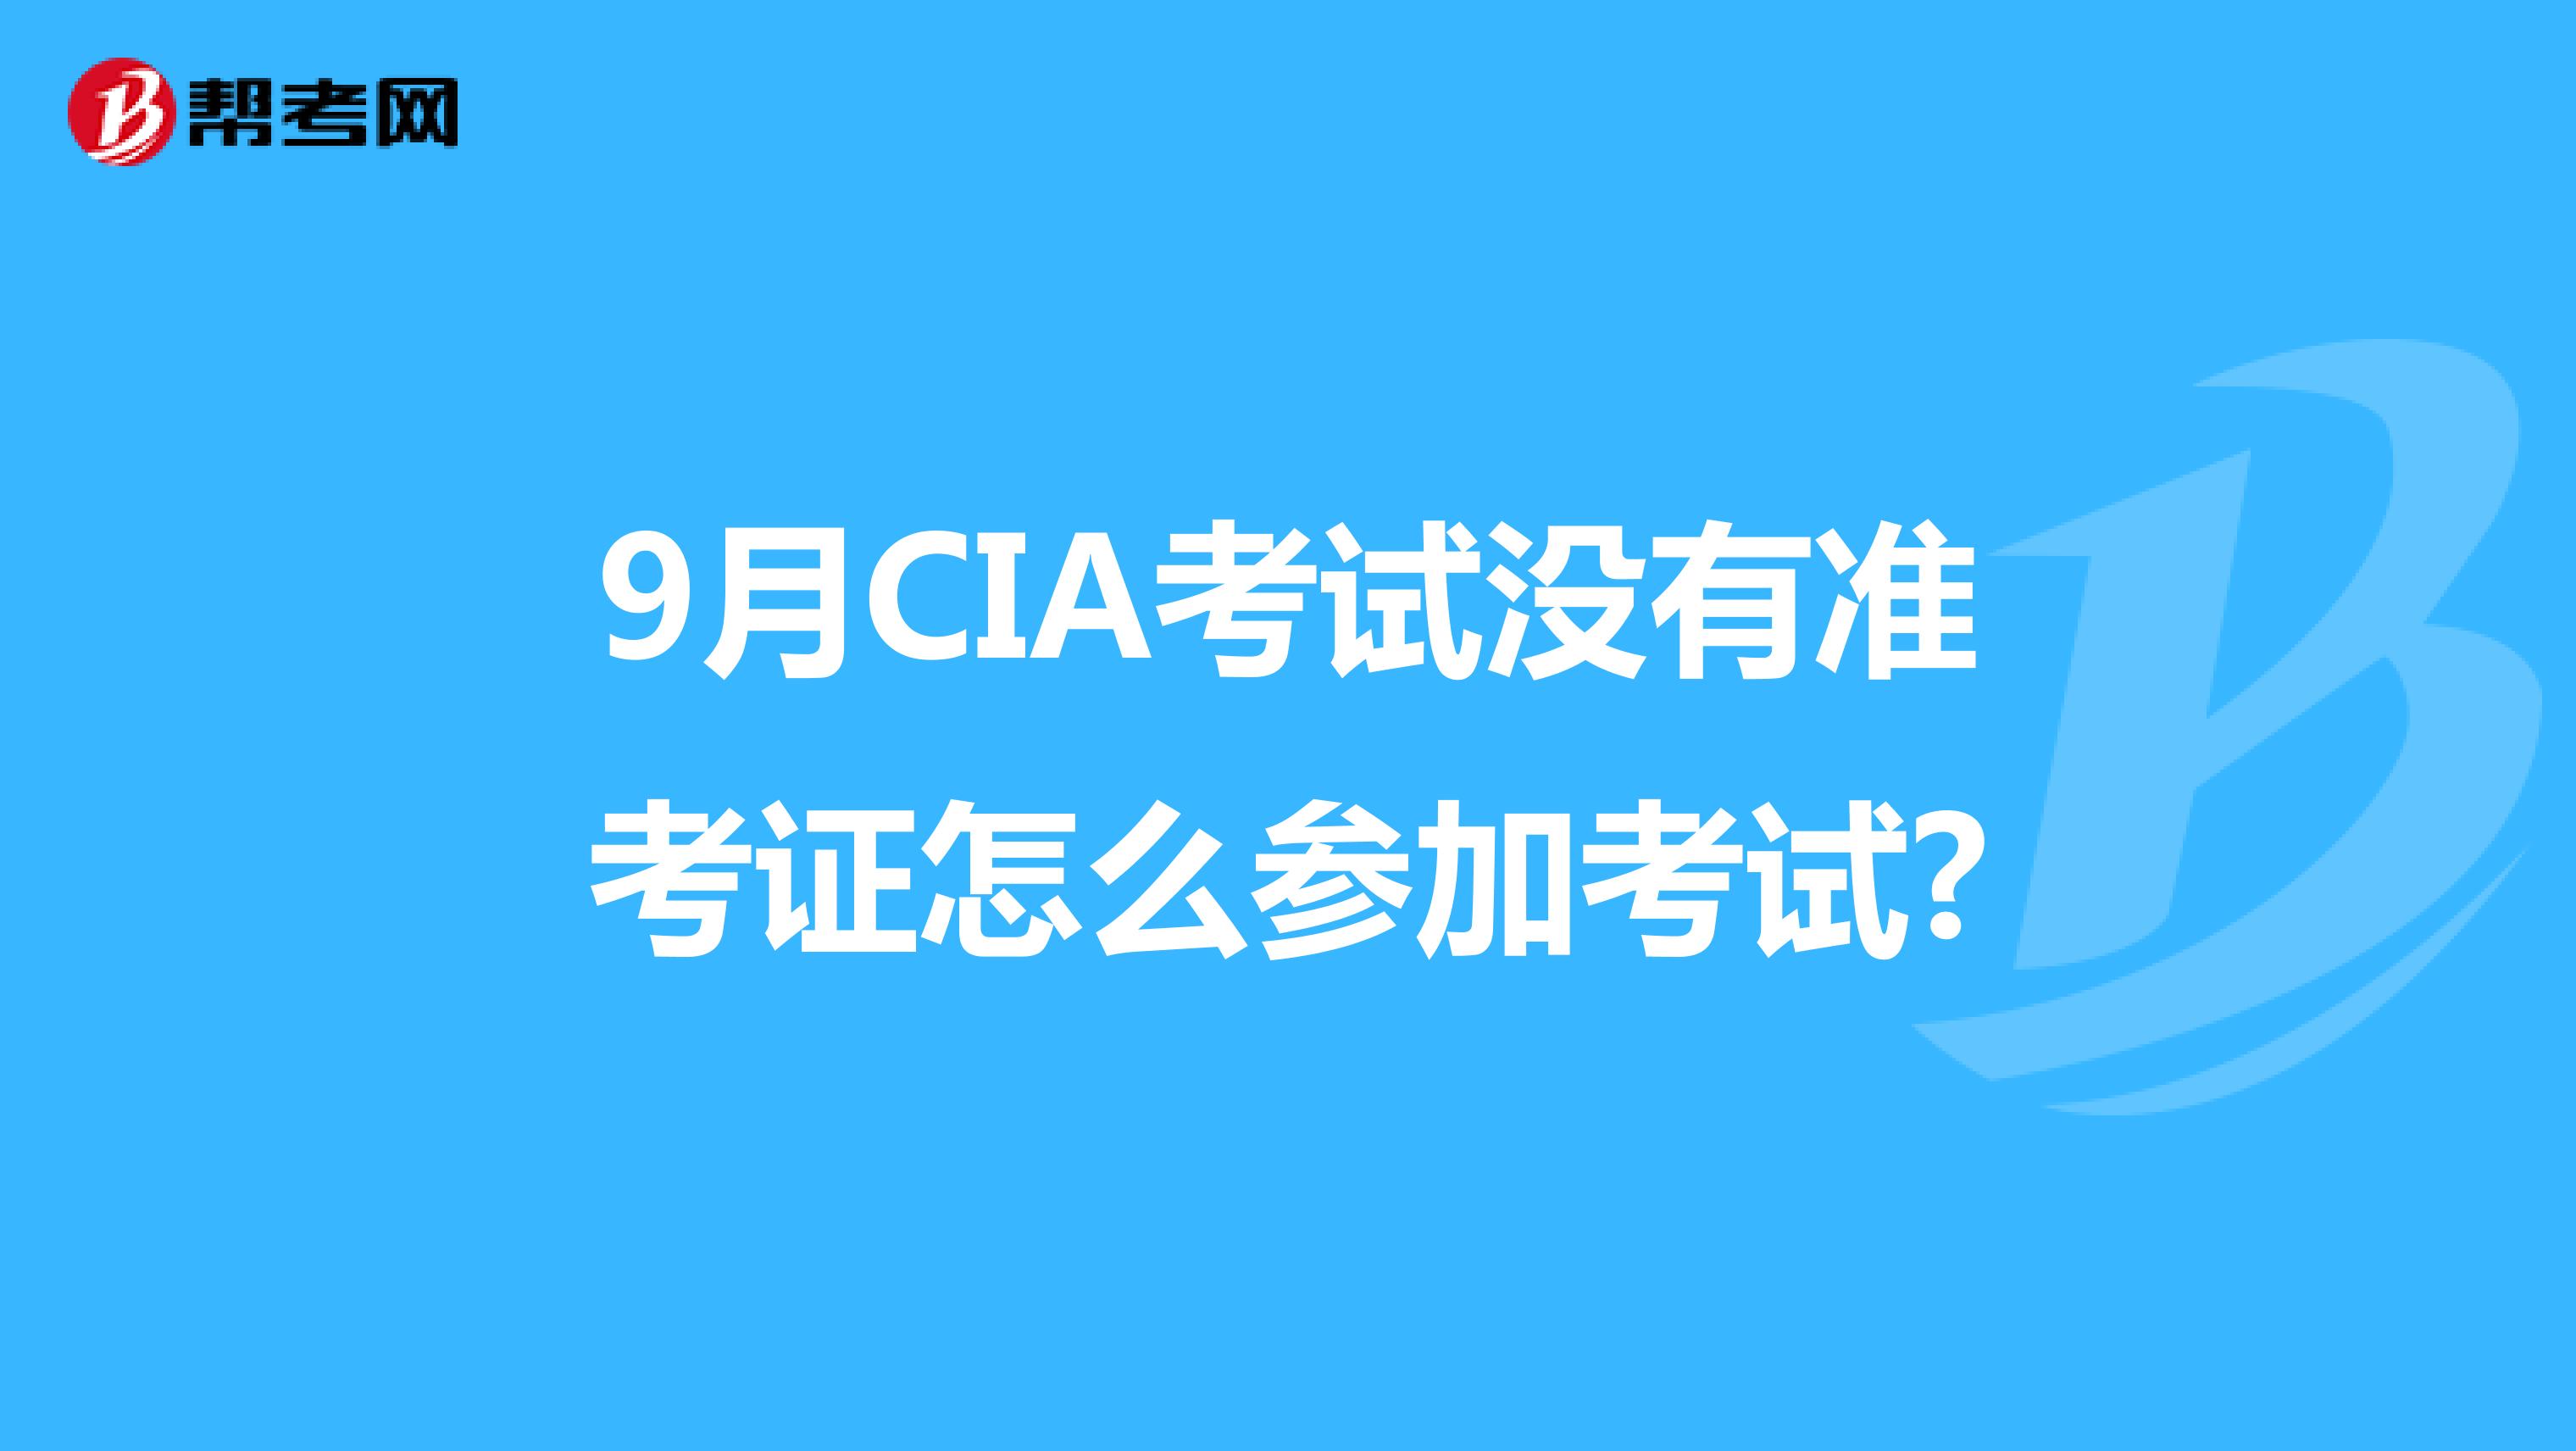 9月CIA考试没有准考证怎么参加考试?